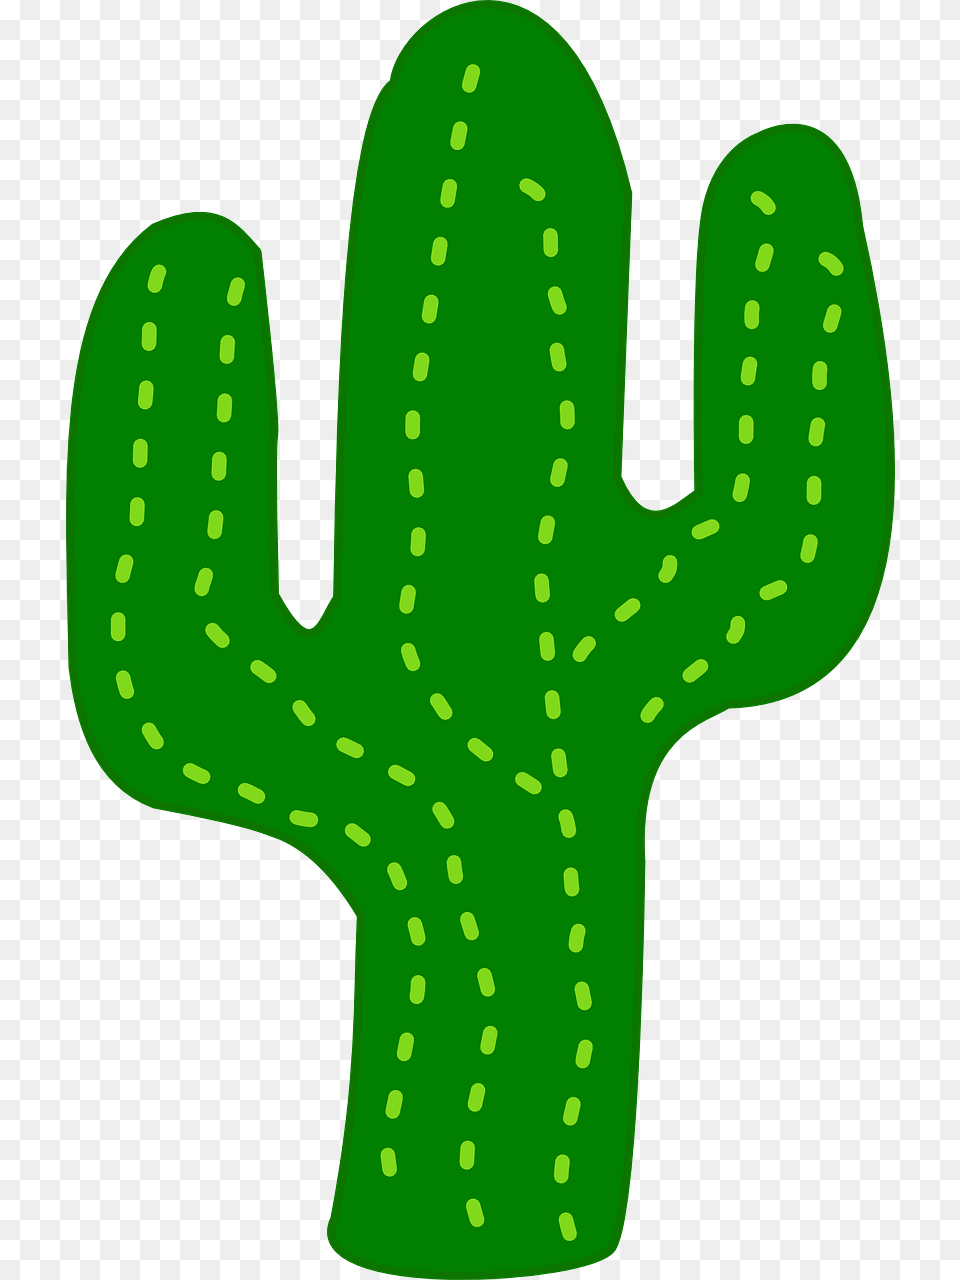 Cactus Clipart Free Cactus Clip Art, Plant Png Image